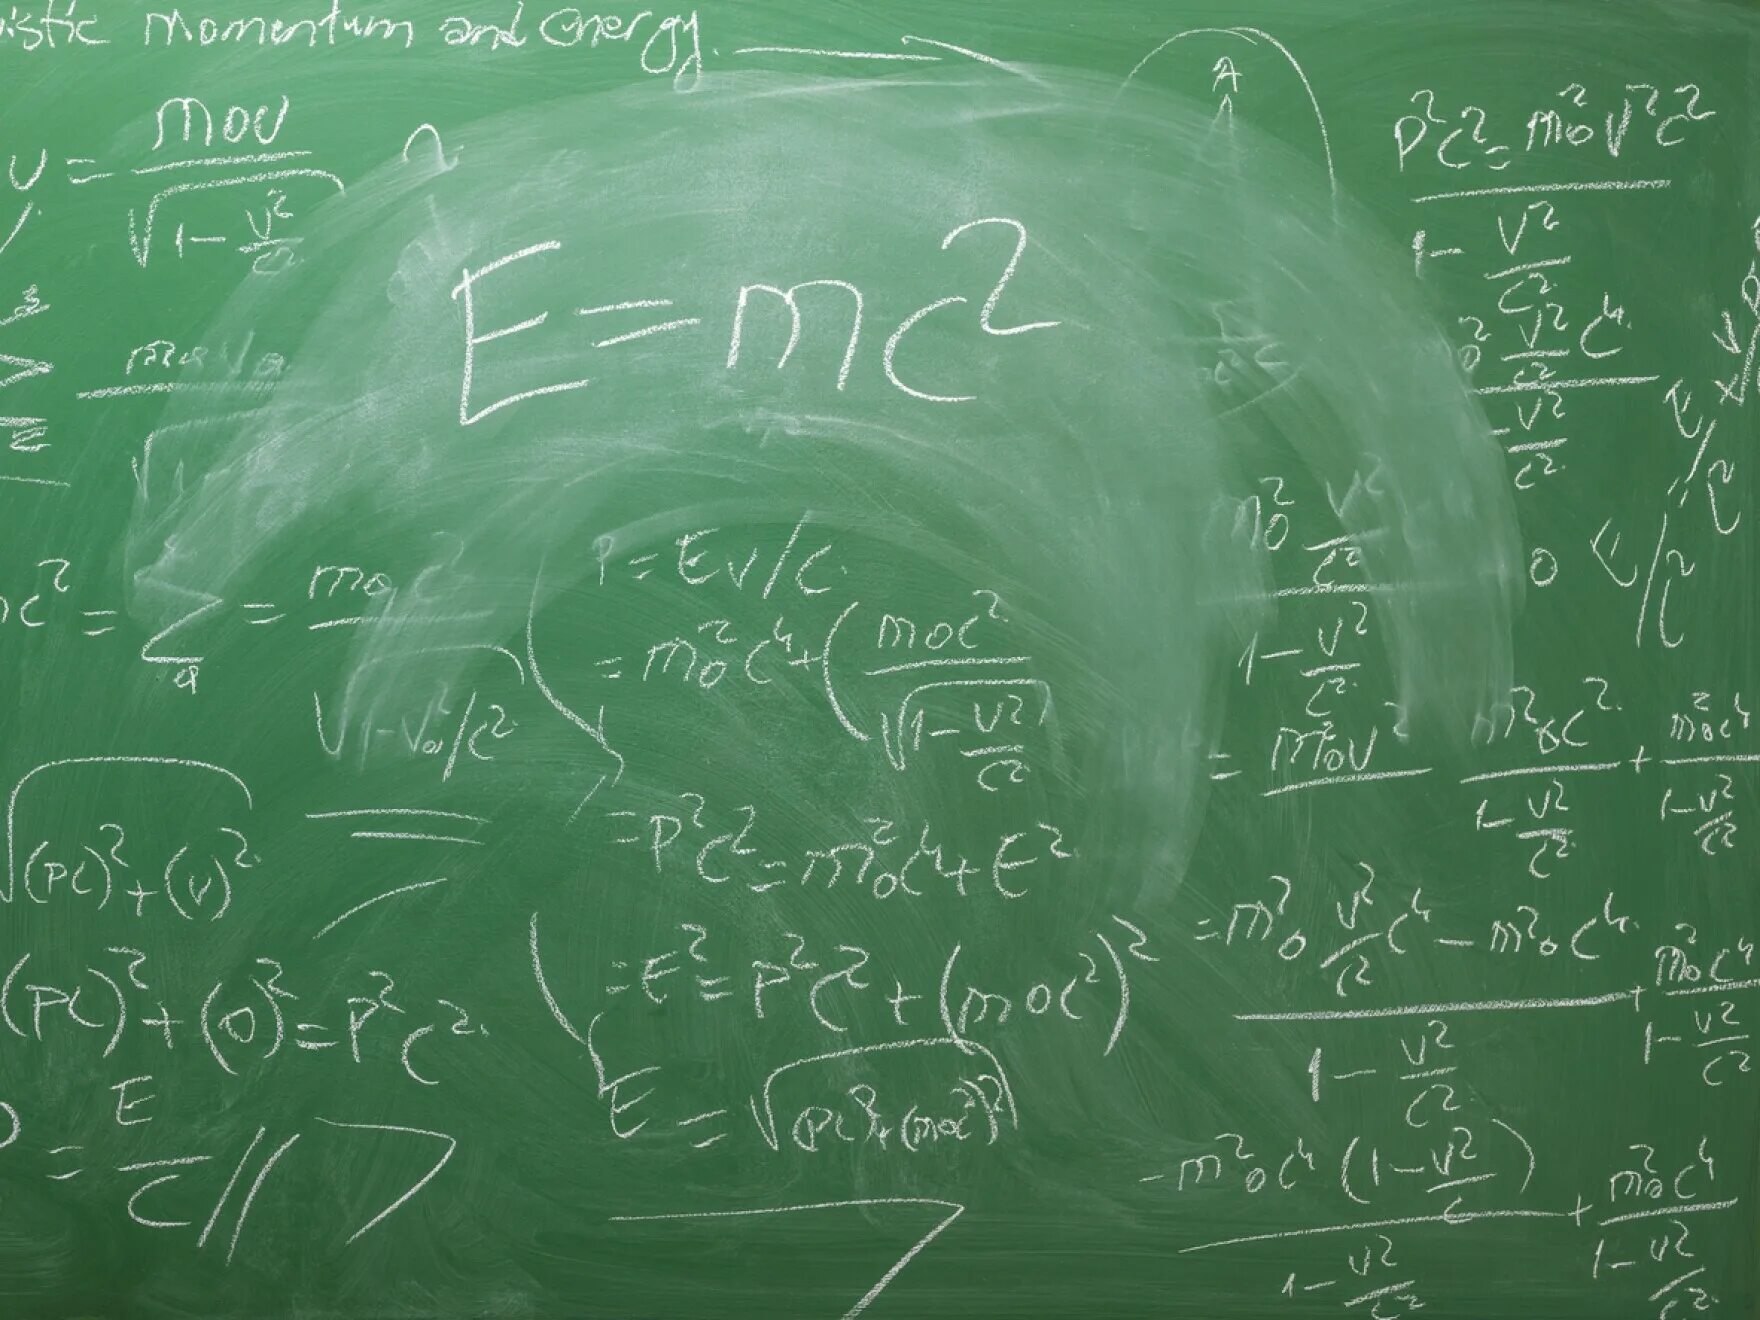 Е равно мс. Формула Эйнштейна e mc2. E=mc². E mc2 на доске. Е равно МЦ квадрат.